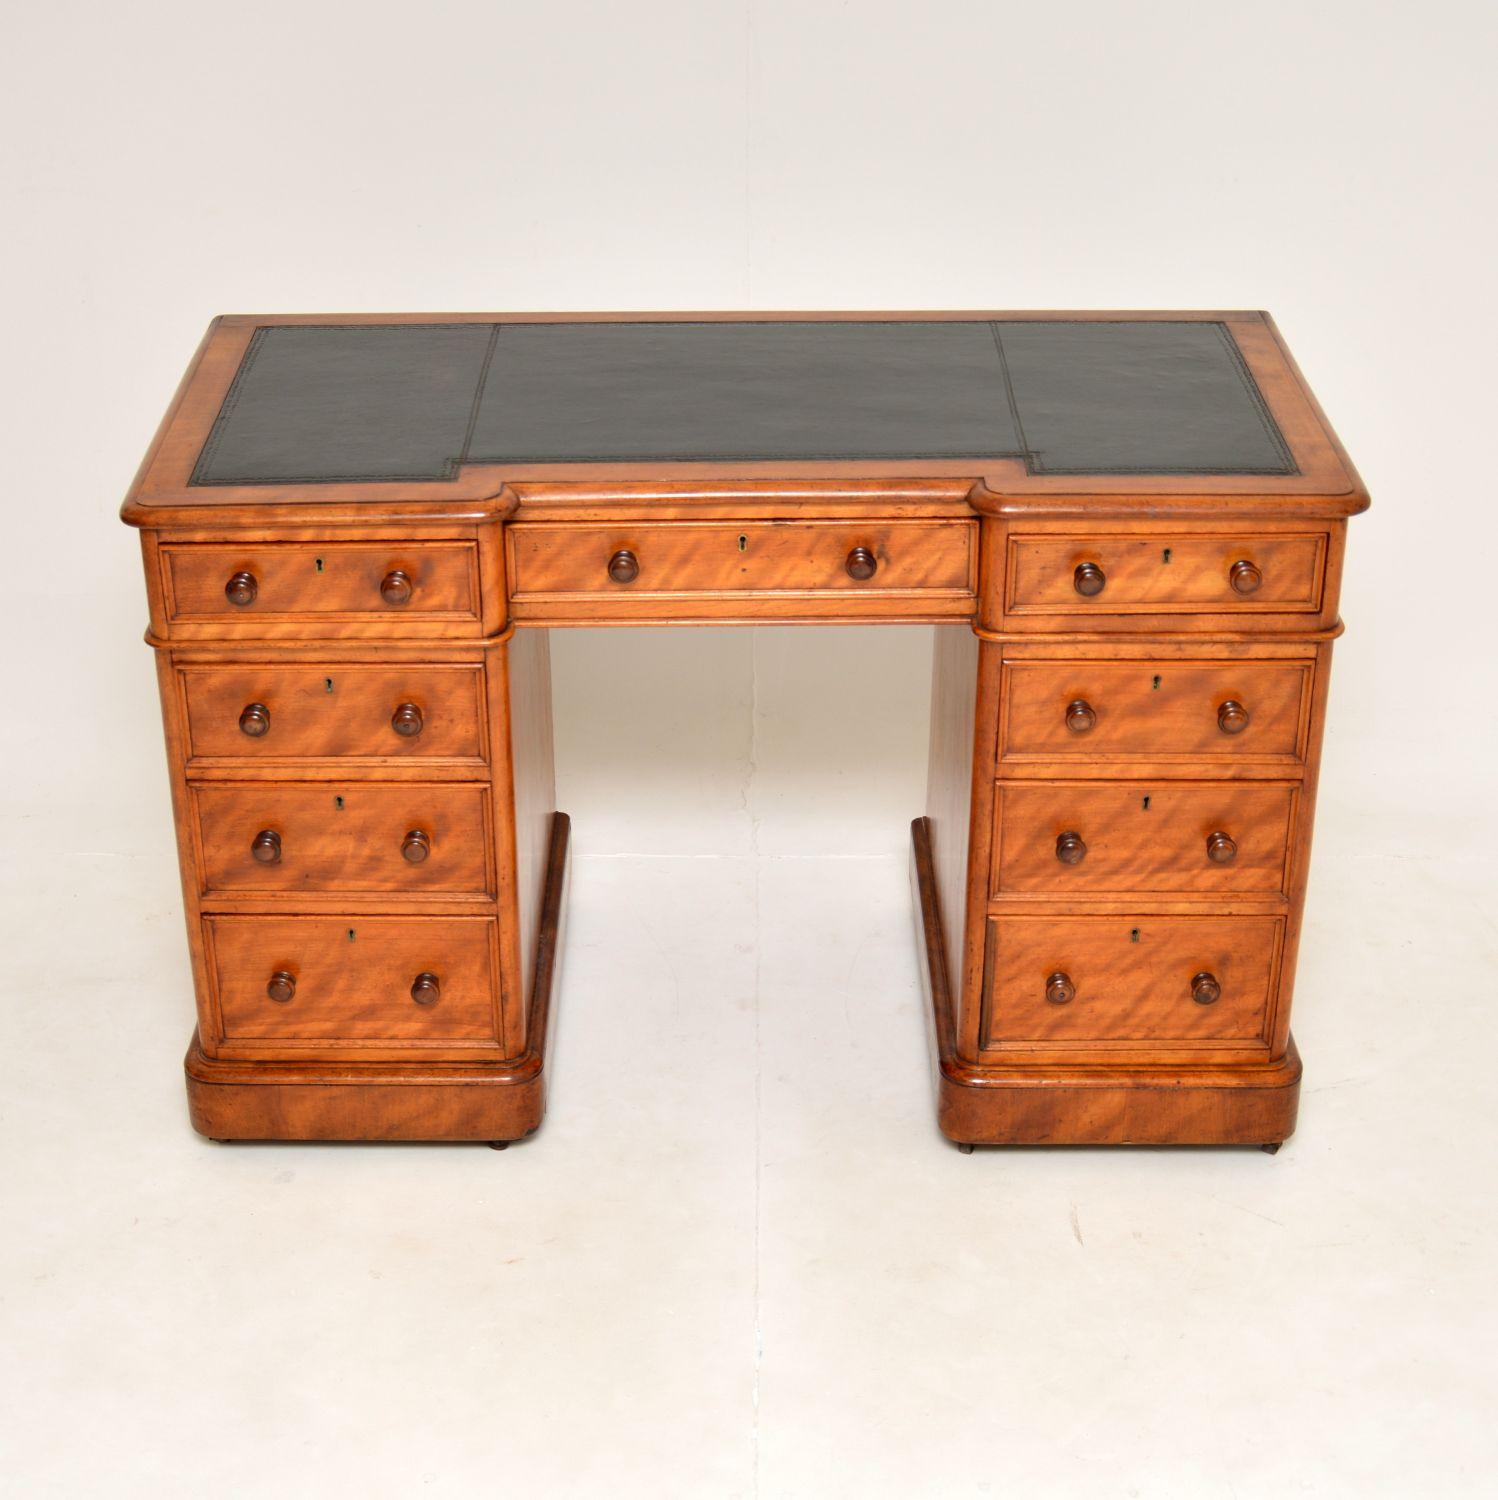 Eine hervorragende antike viktorianische Sockel Schreibtisch, schön aus Satin Holz gemacht. Sie wurde in England hergestellt und stammt aus der Zeit zwischen 1860 und 1880.

Er ist von sehr guter Qualität und hat ein schönes, umgekehrtes